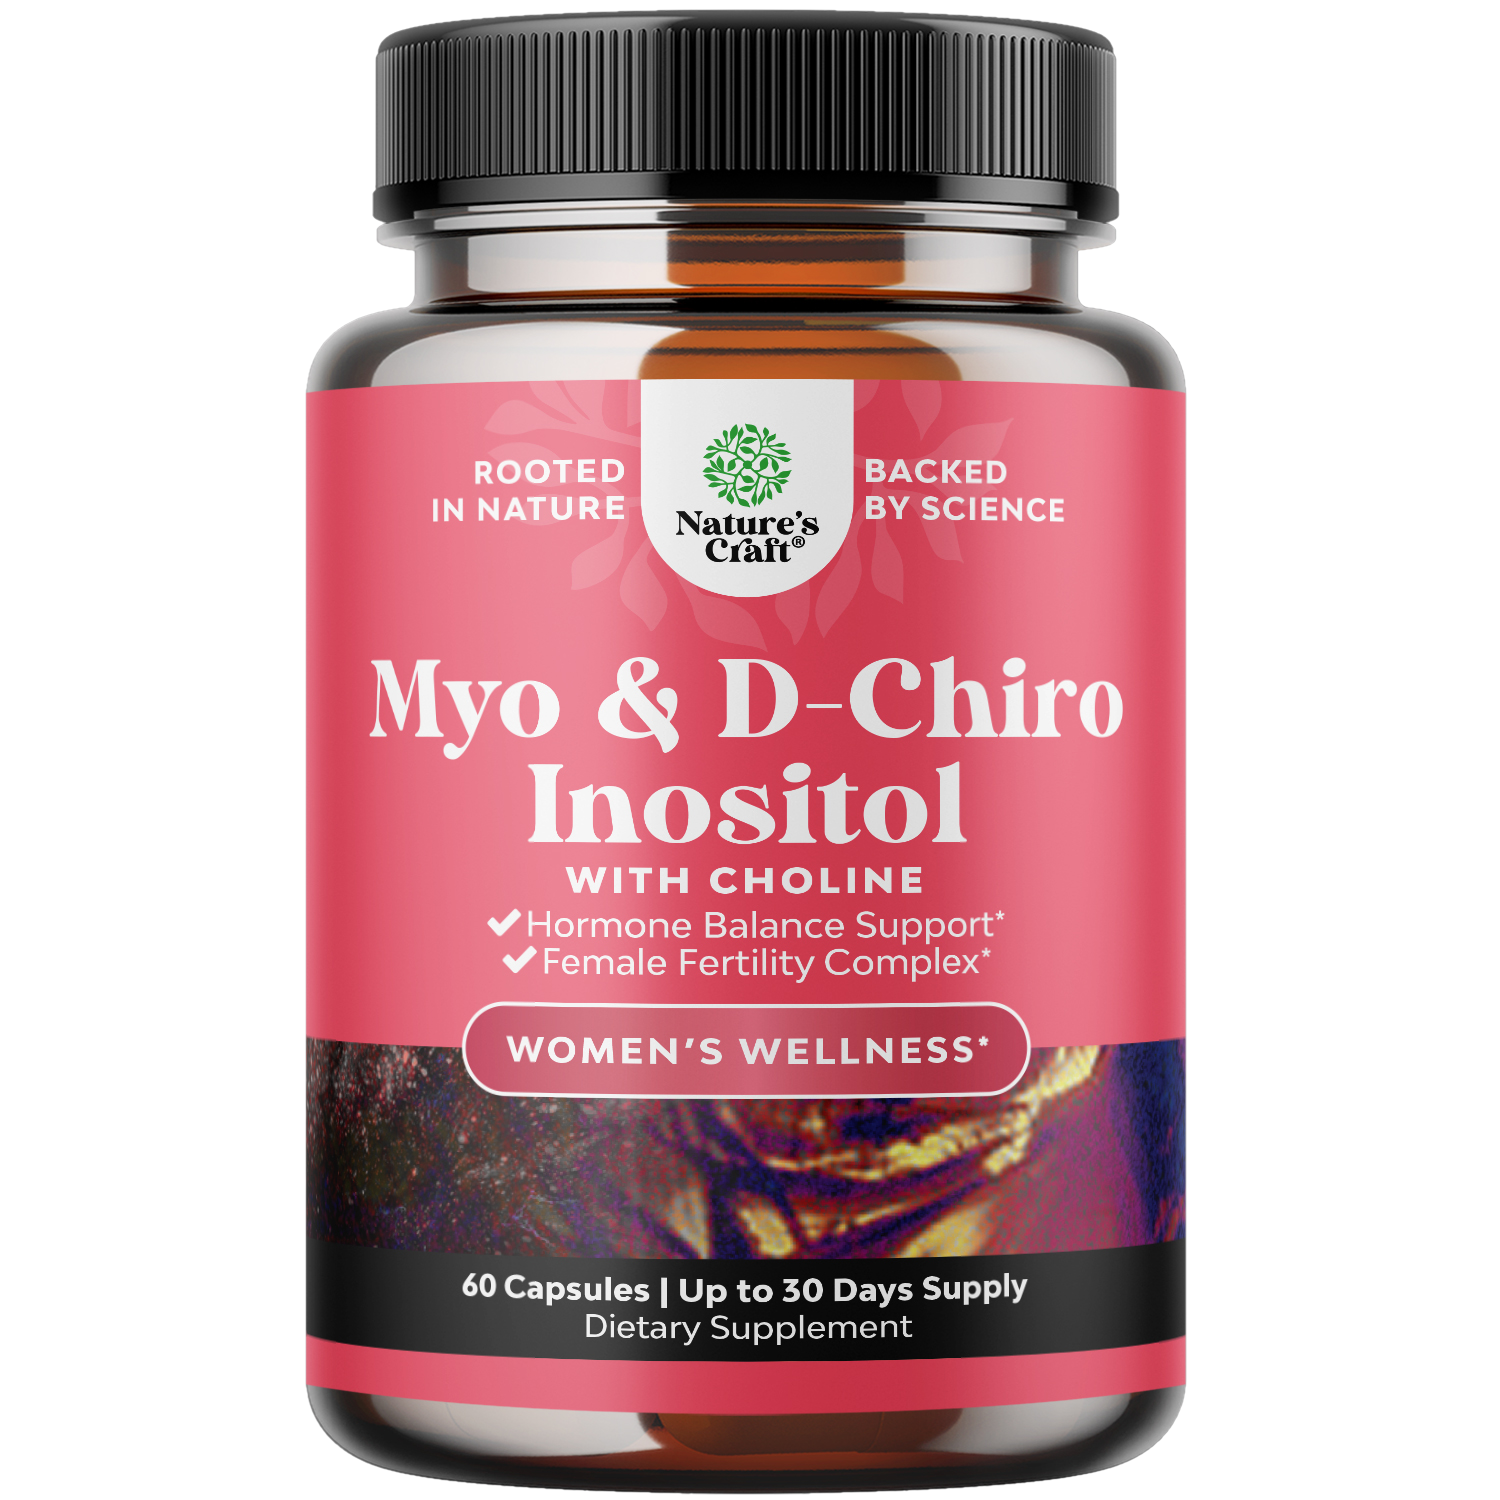 Myo & D-Chiro Inositol - 60 Capsules